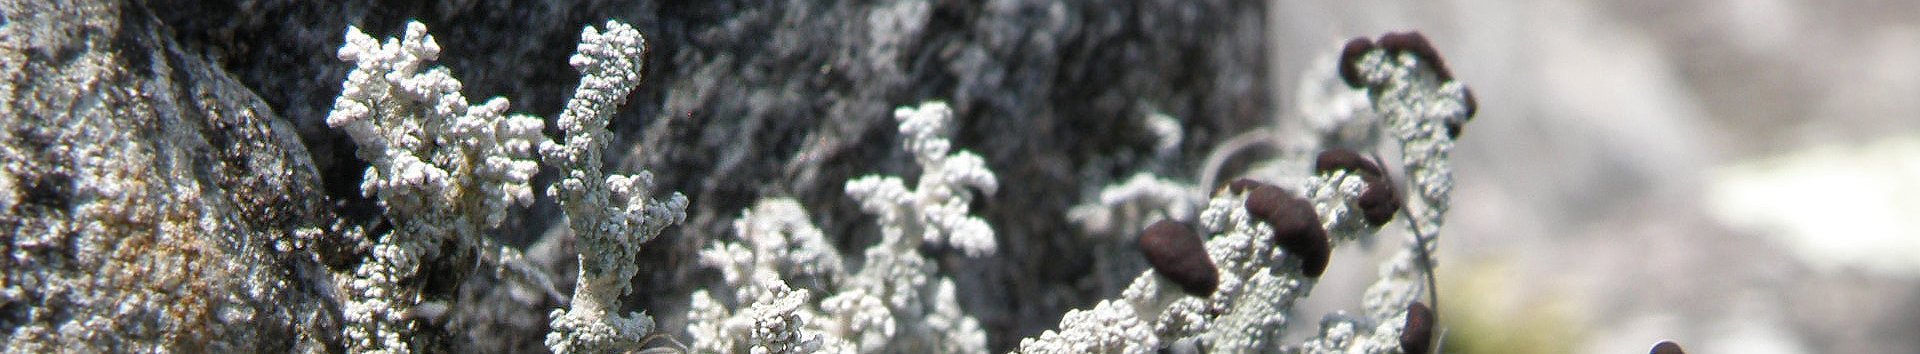  Verhüllende Korallenflechte auf einem Stein